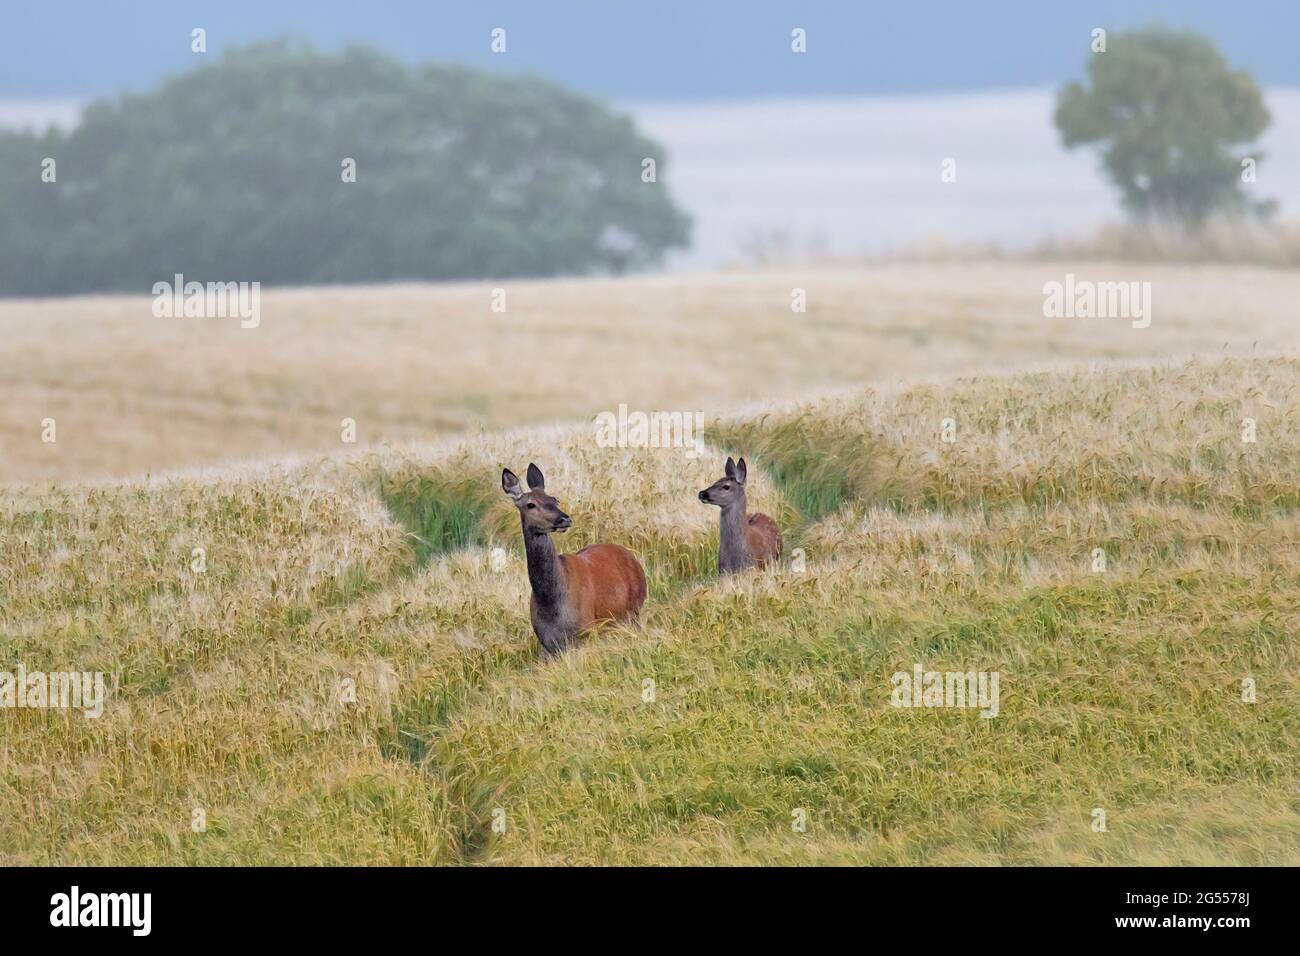 Cerf de Virginie (Cervus elaphus) femelle / arrière avec jeunes veaux fourrager dans le champ de blé / champ de maïs dans la brume en été Banque D'Images